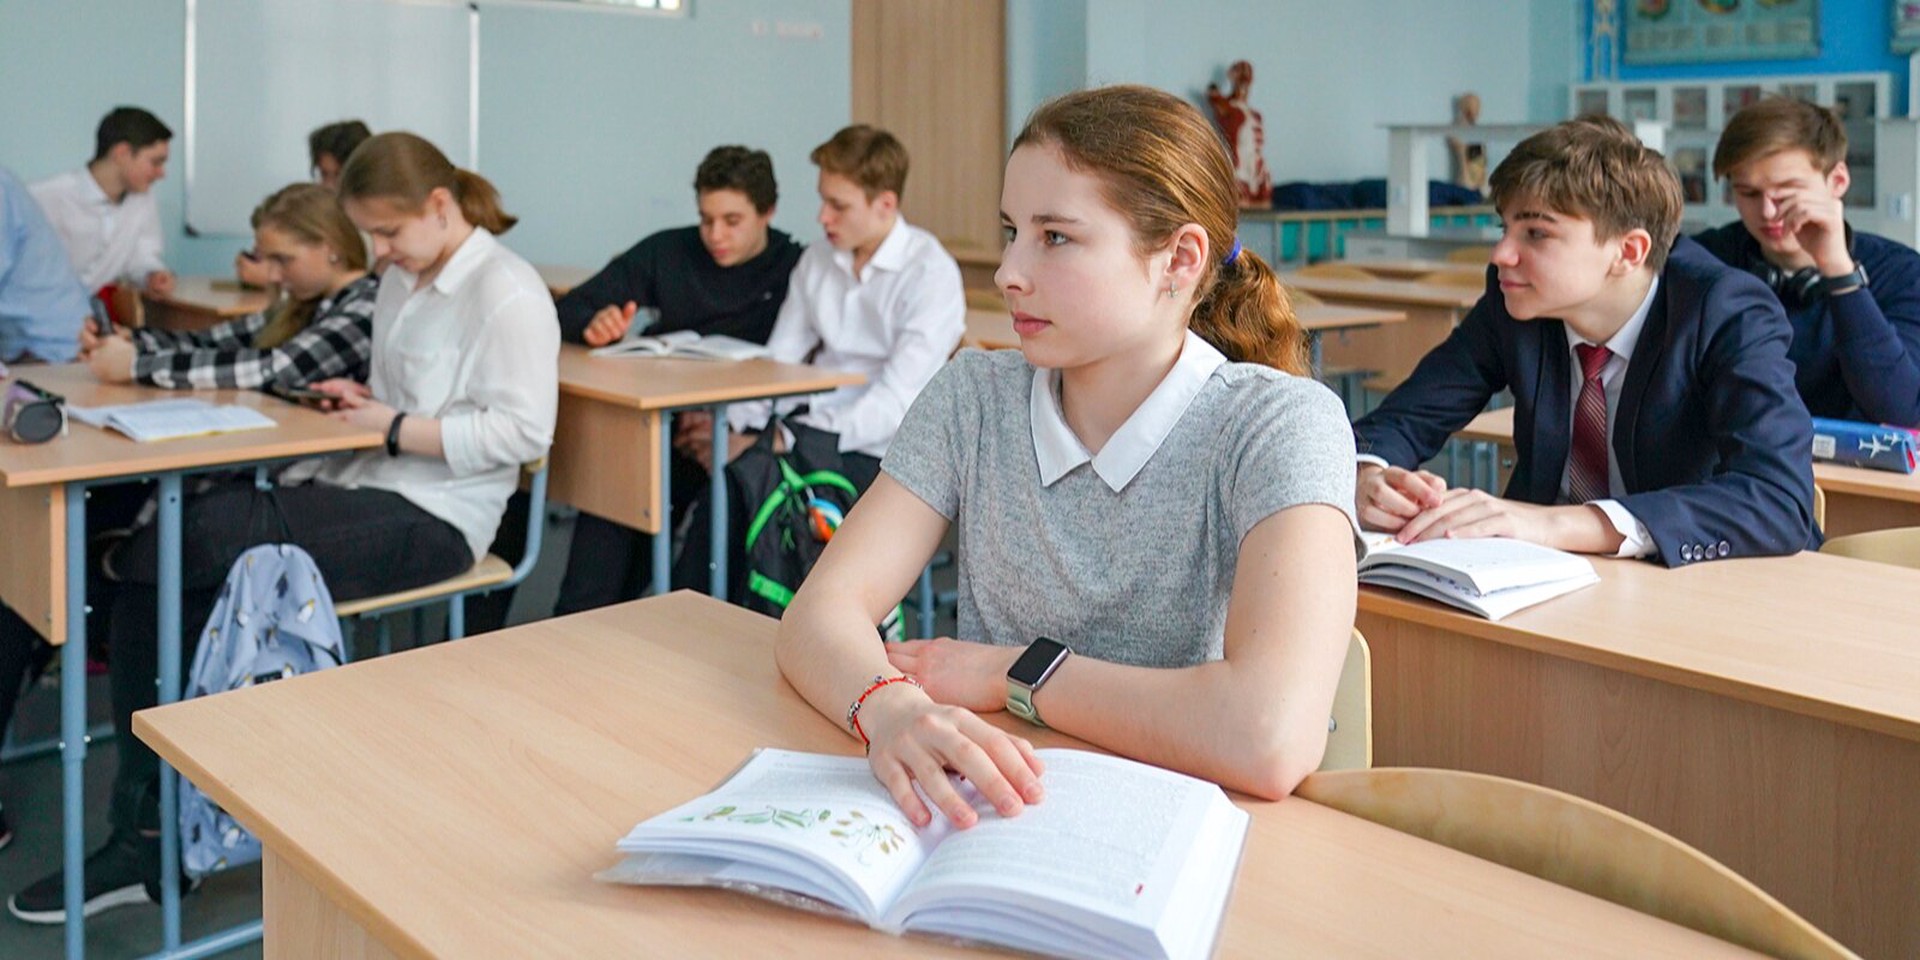 В Госдуме хотят запретить использование телефонов в школе даже в образовательных целях